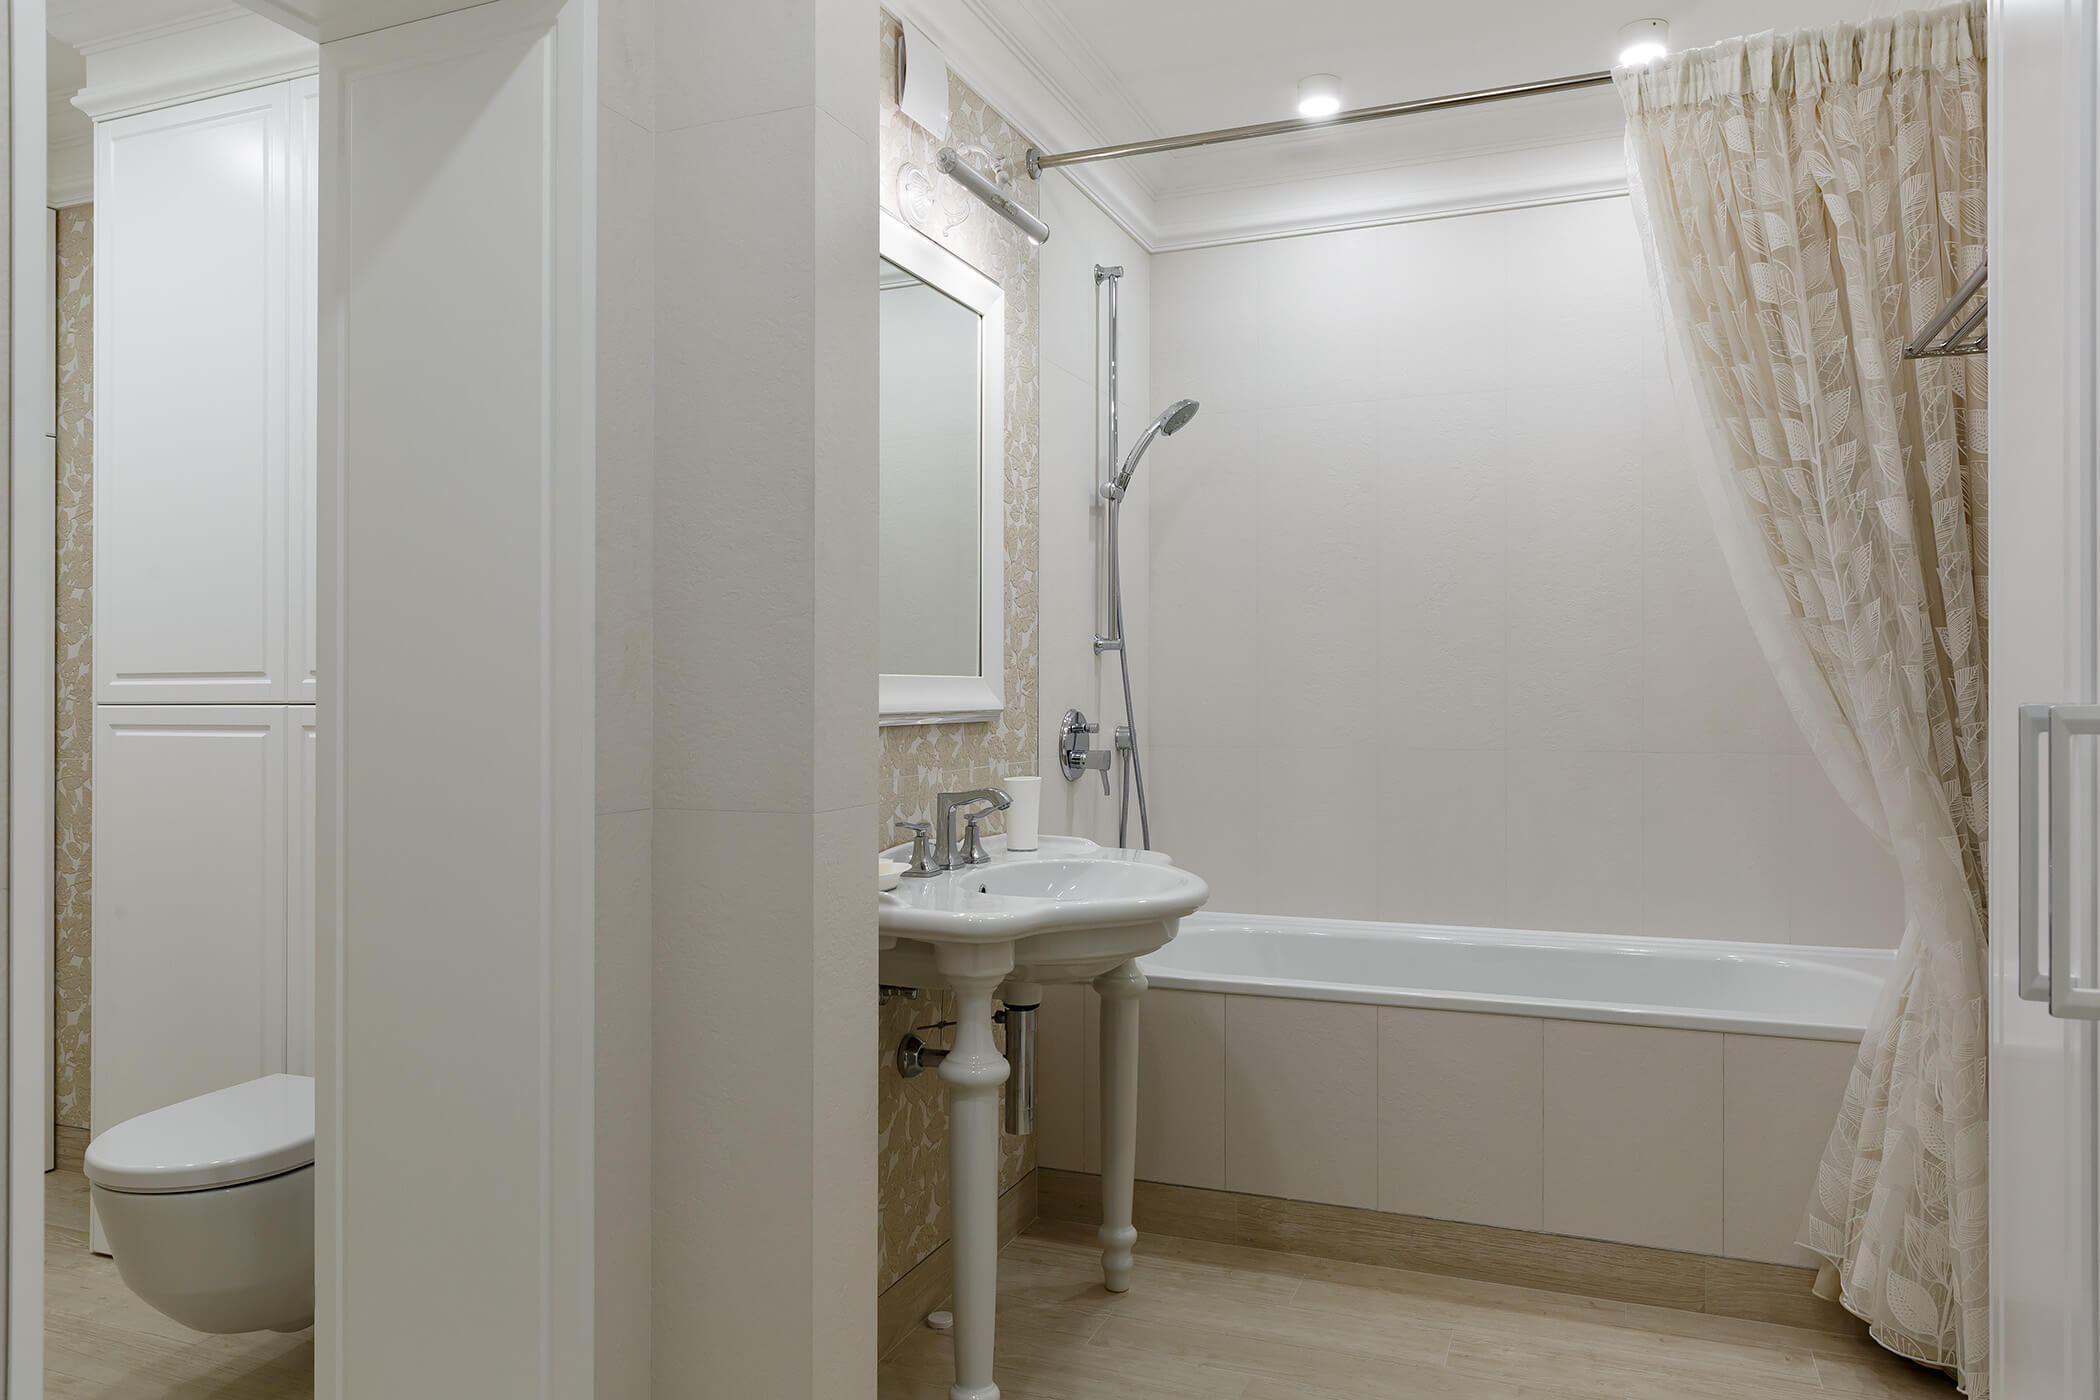 Брендовые аксессуары Pomdor Bella, изготовленное на заказ зеркало несомненно украсили детскую ванную комнату.  - проекты Setus Design